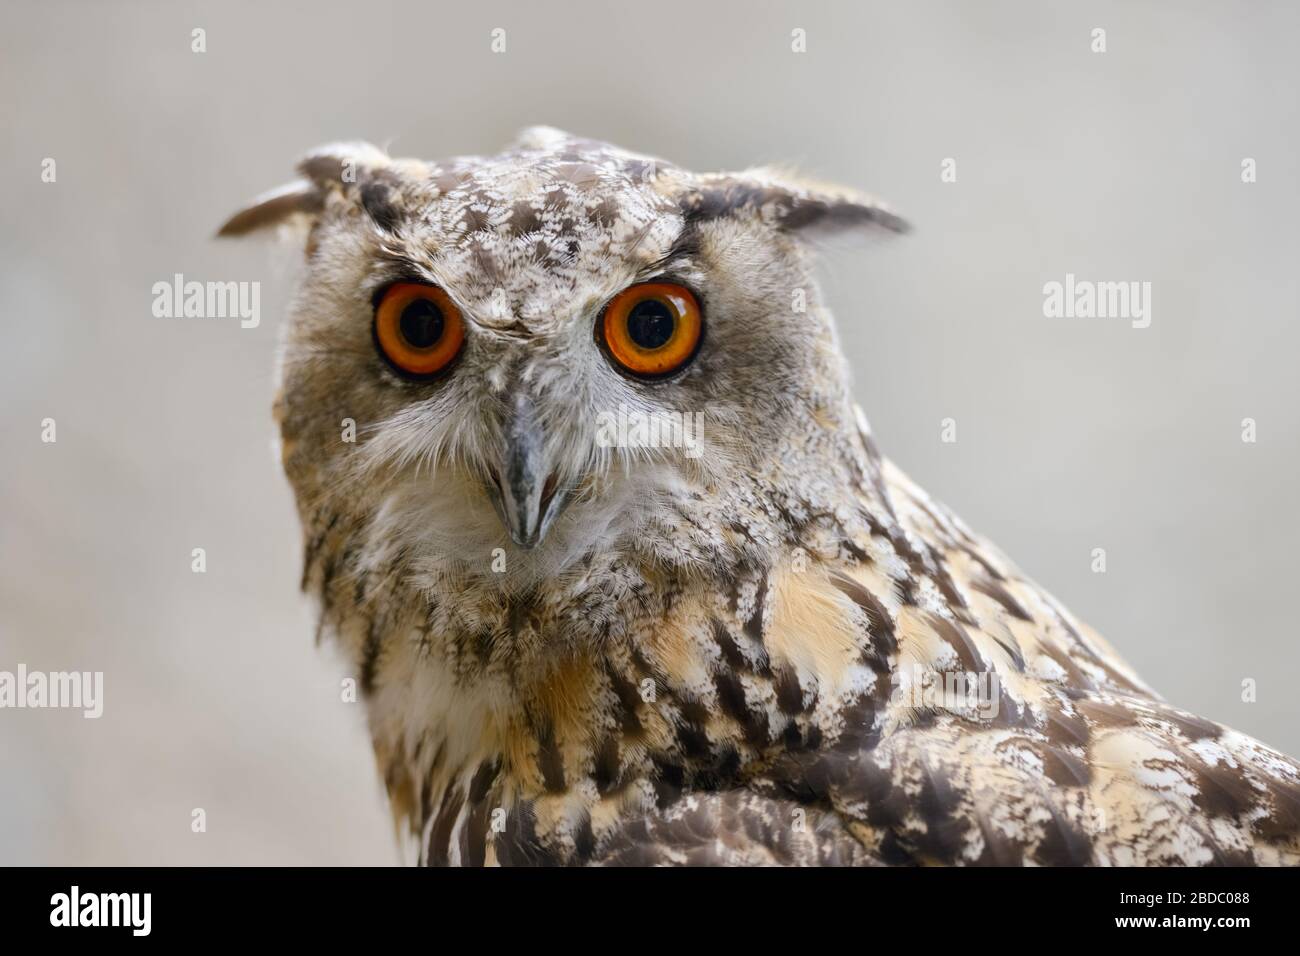 Eagle Owl ( Bubo bubo ), Eurasian Eagle-Owl, also called Northern Eagle Owl or European Eagle-Owl, adult, detailed headshot, frontal view, Europe. Stock Photo